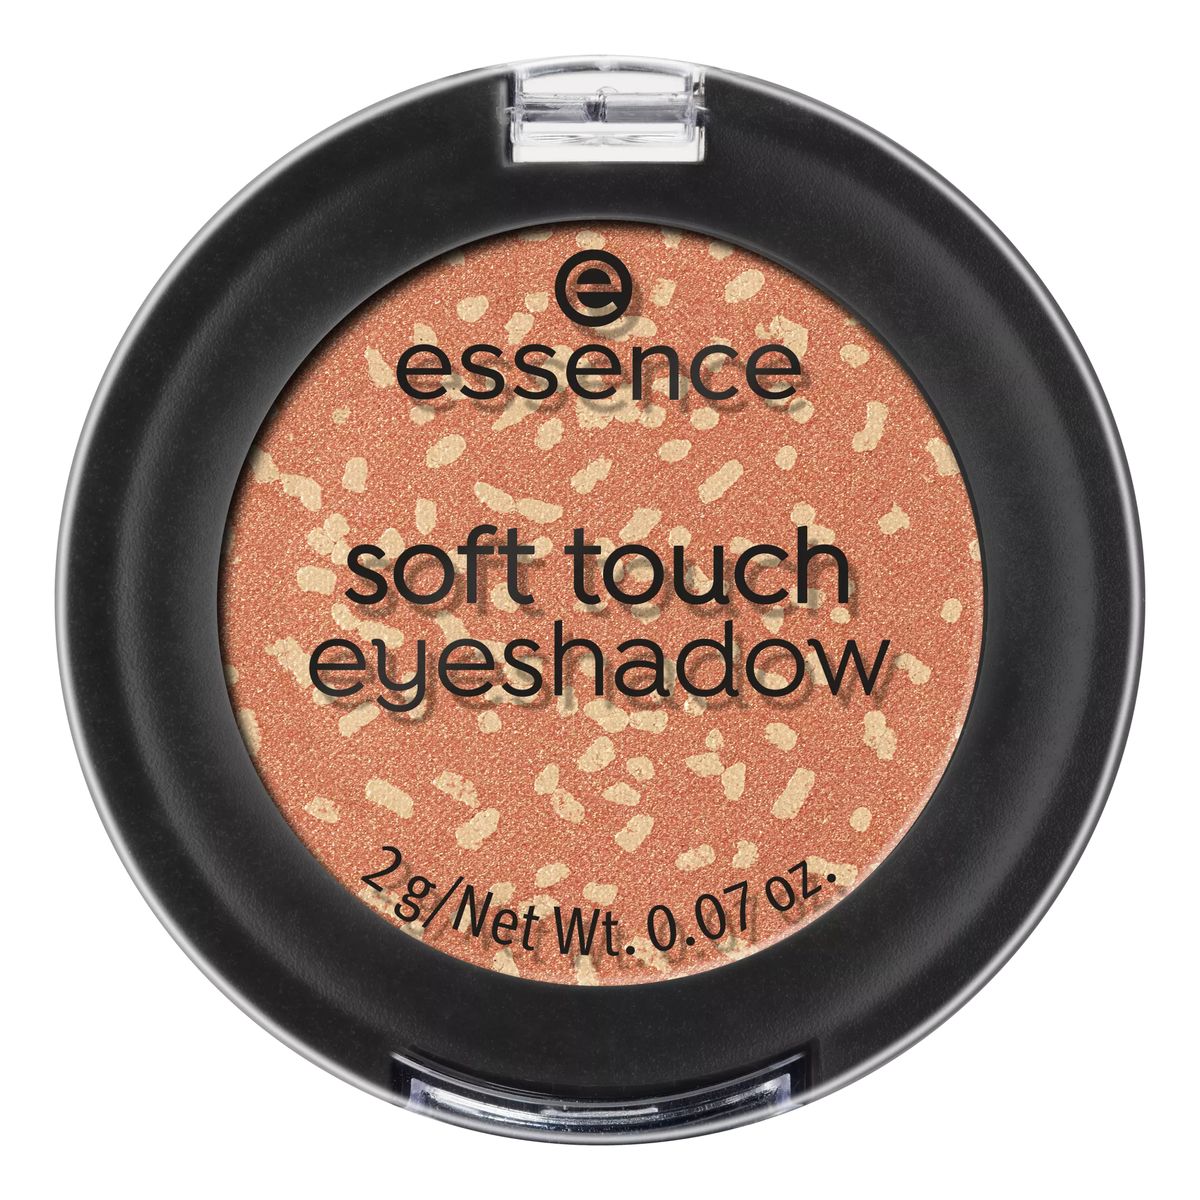 Essence Soft touch eyeshadow Cienie Do Powiek 2g